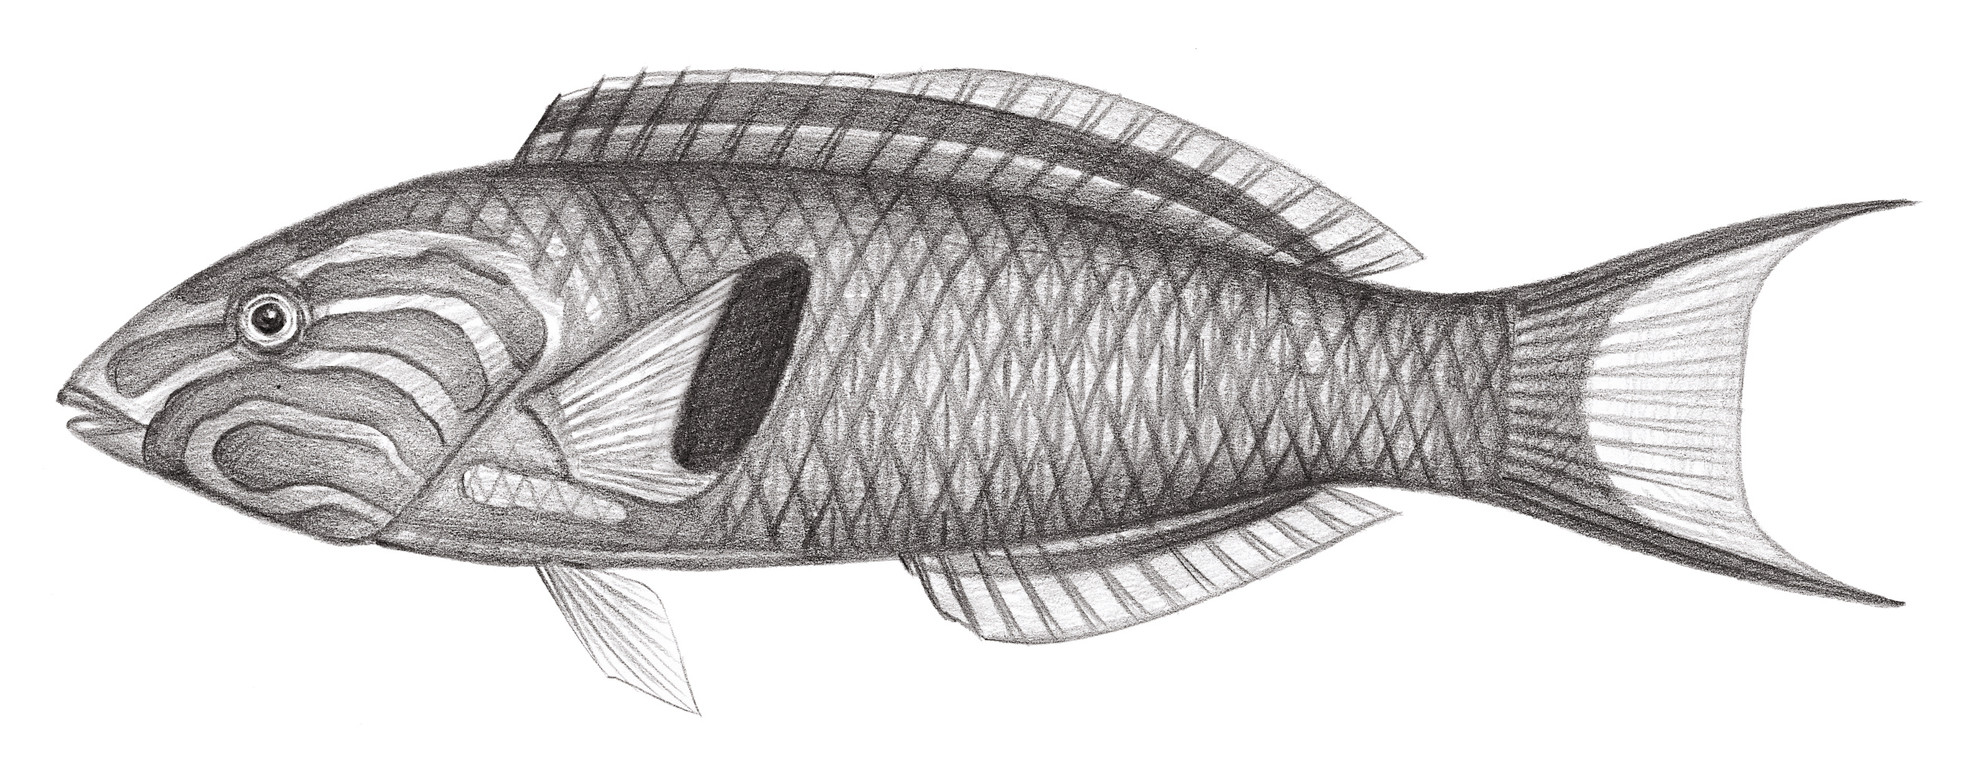 1838.	黃衣錦魚 Thalassoma lutescens (Lay & Bennett, 1839)